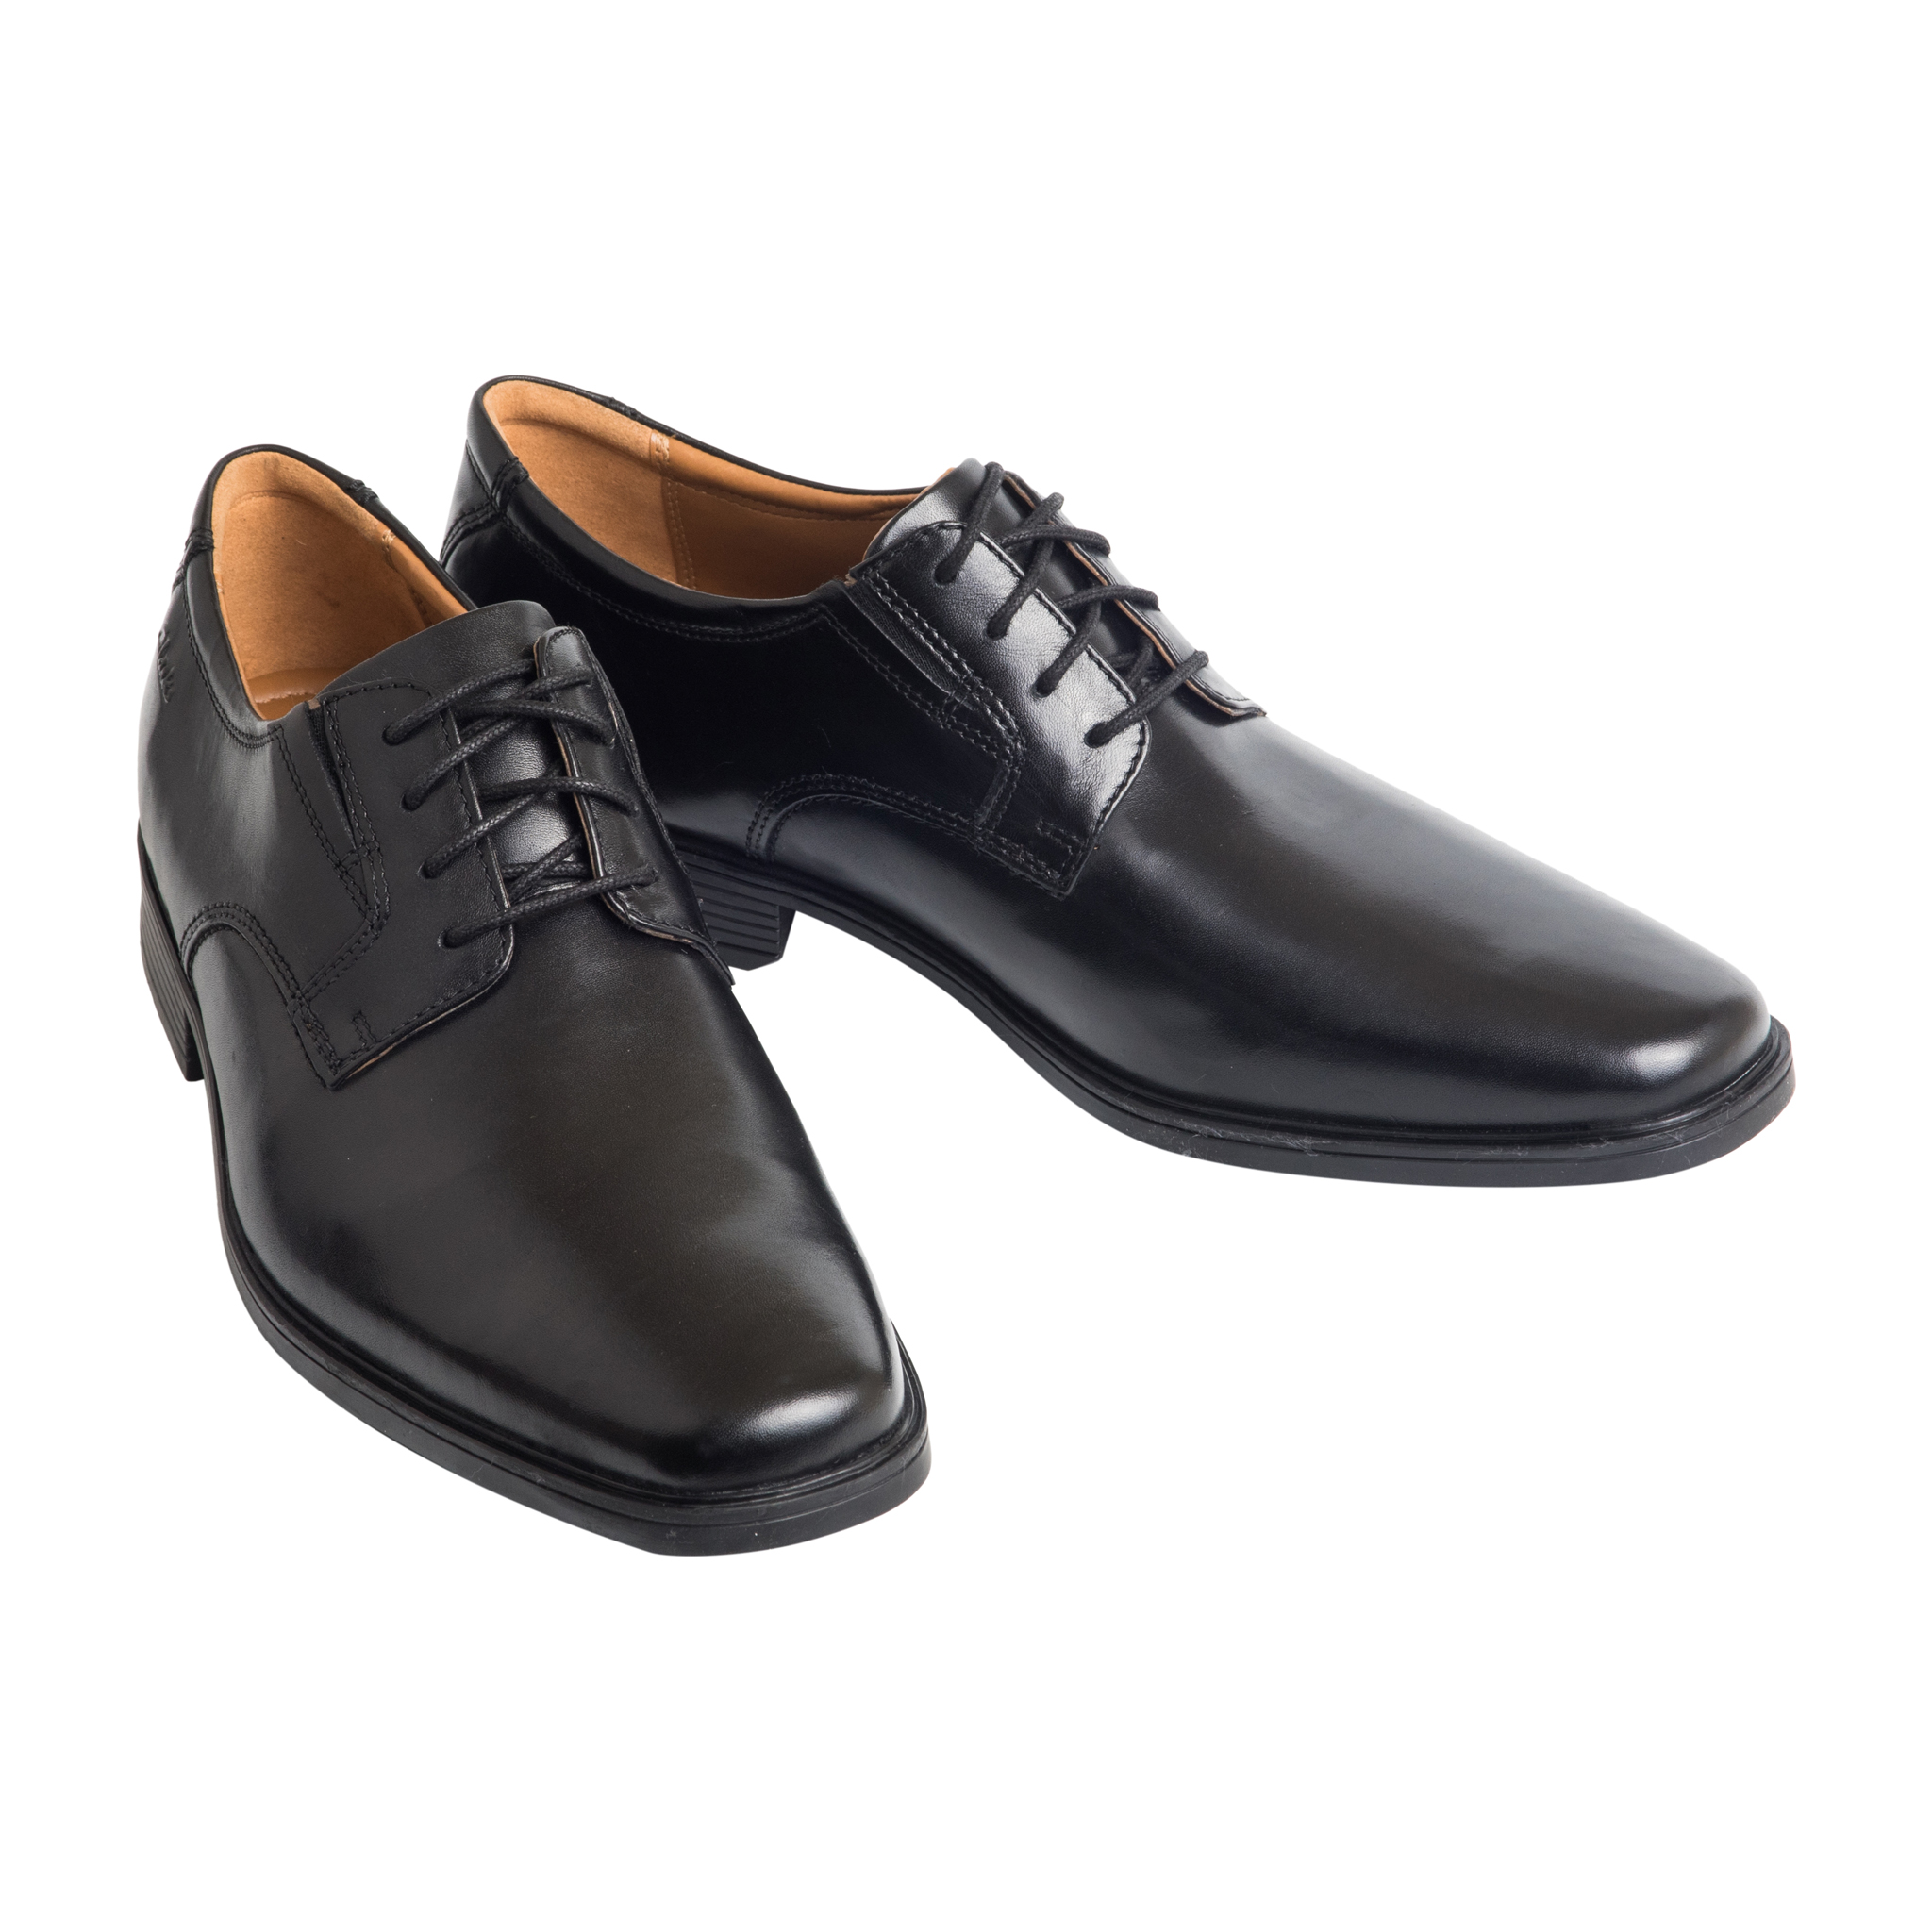 Мужская кожаная обувь Clarks Tilden Plain (туфли) - рейтинг 5 по отзывам  экспертов ☑ Экспертиза состава и производителя | Роскачество